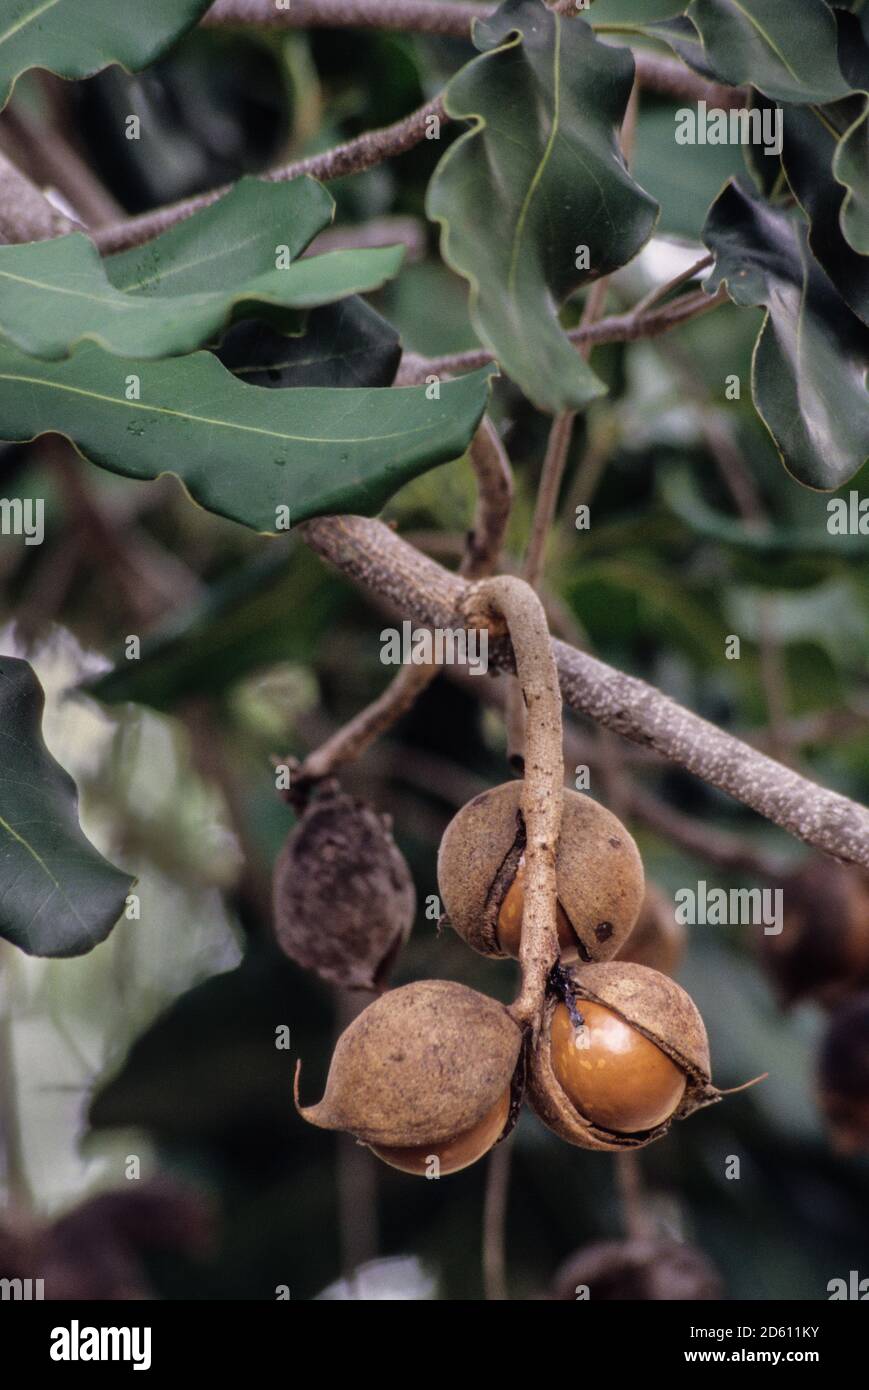 Big Island, Hawaii, USA. Macadamia nuts on tree. Stock Photo